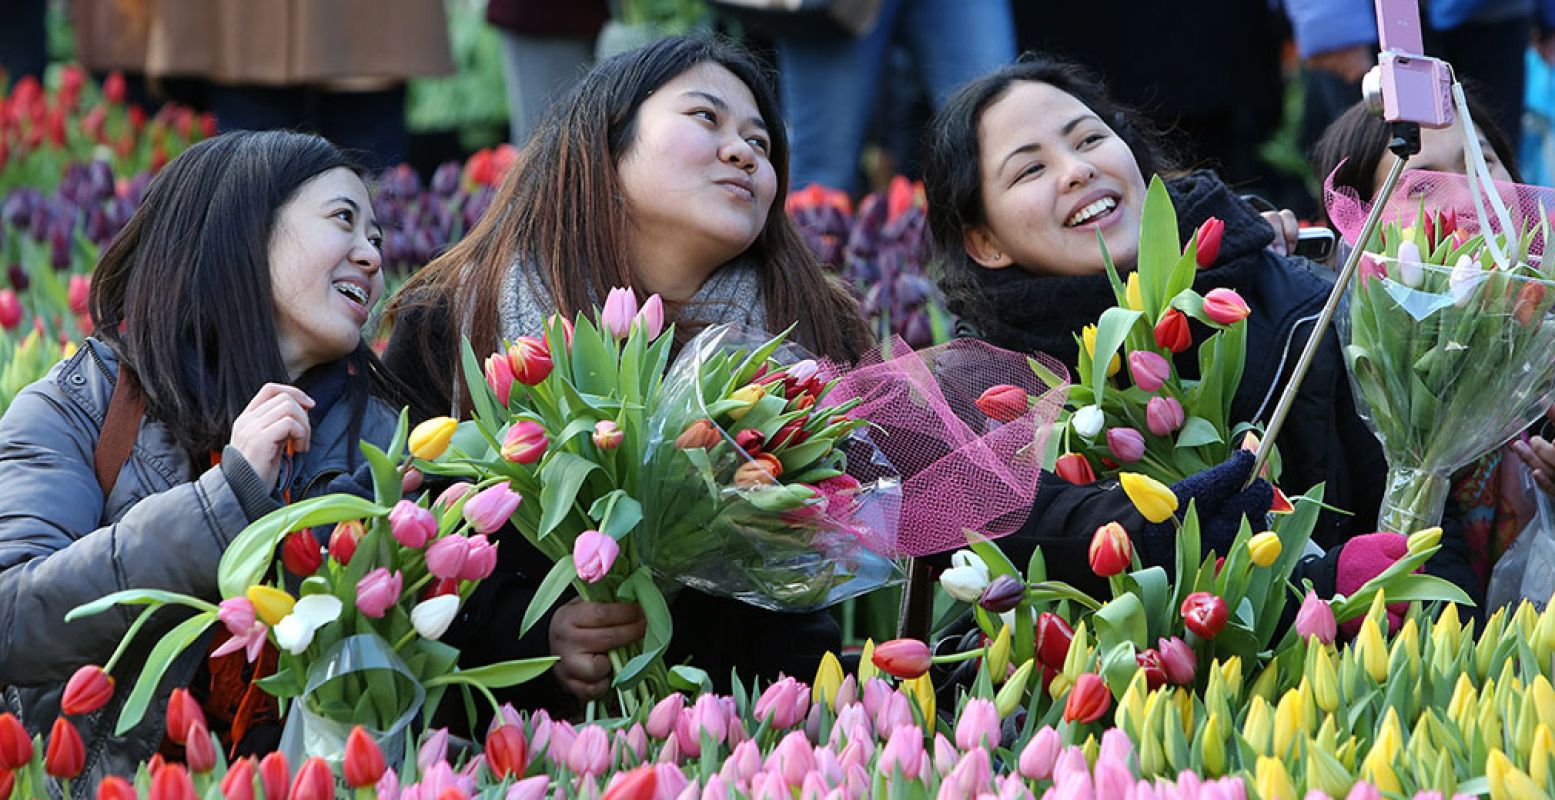 Tijd voor een fleurige selfie tussen de kleurige tulpen! Foto: Tulpentijd.nl / VidiPhoto.